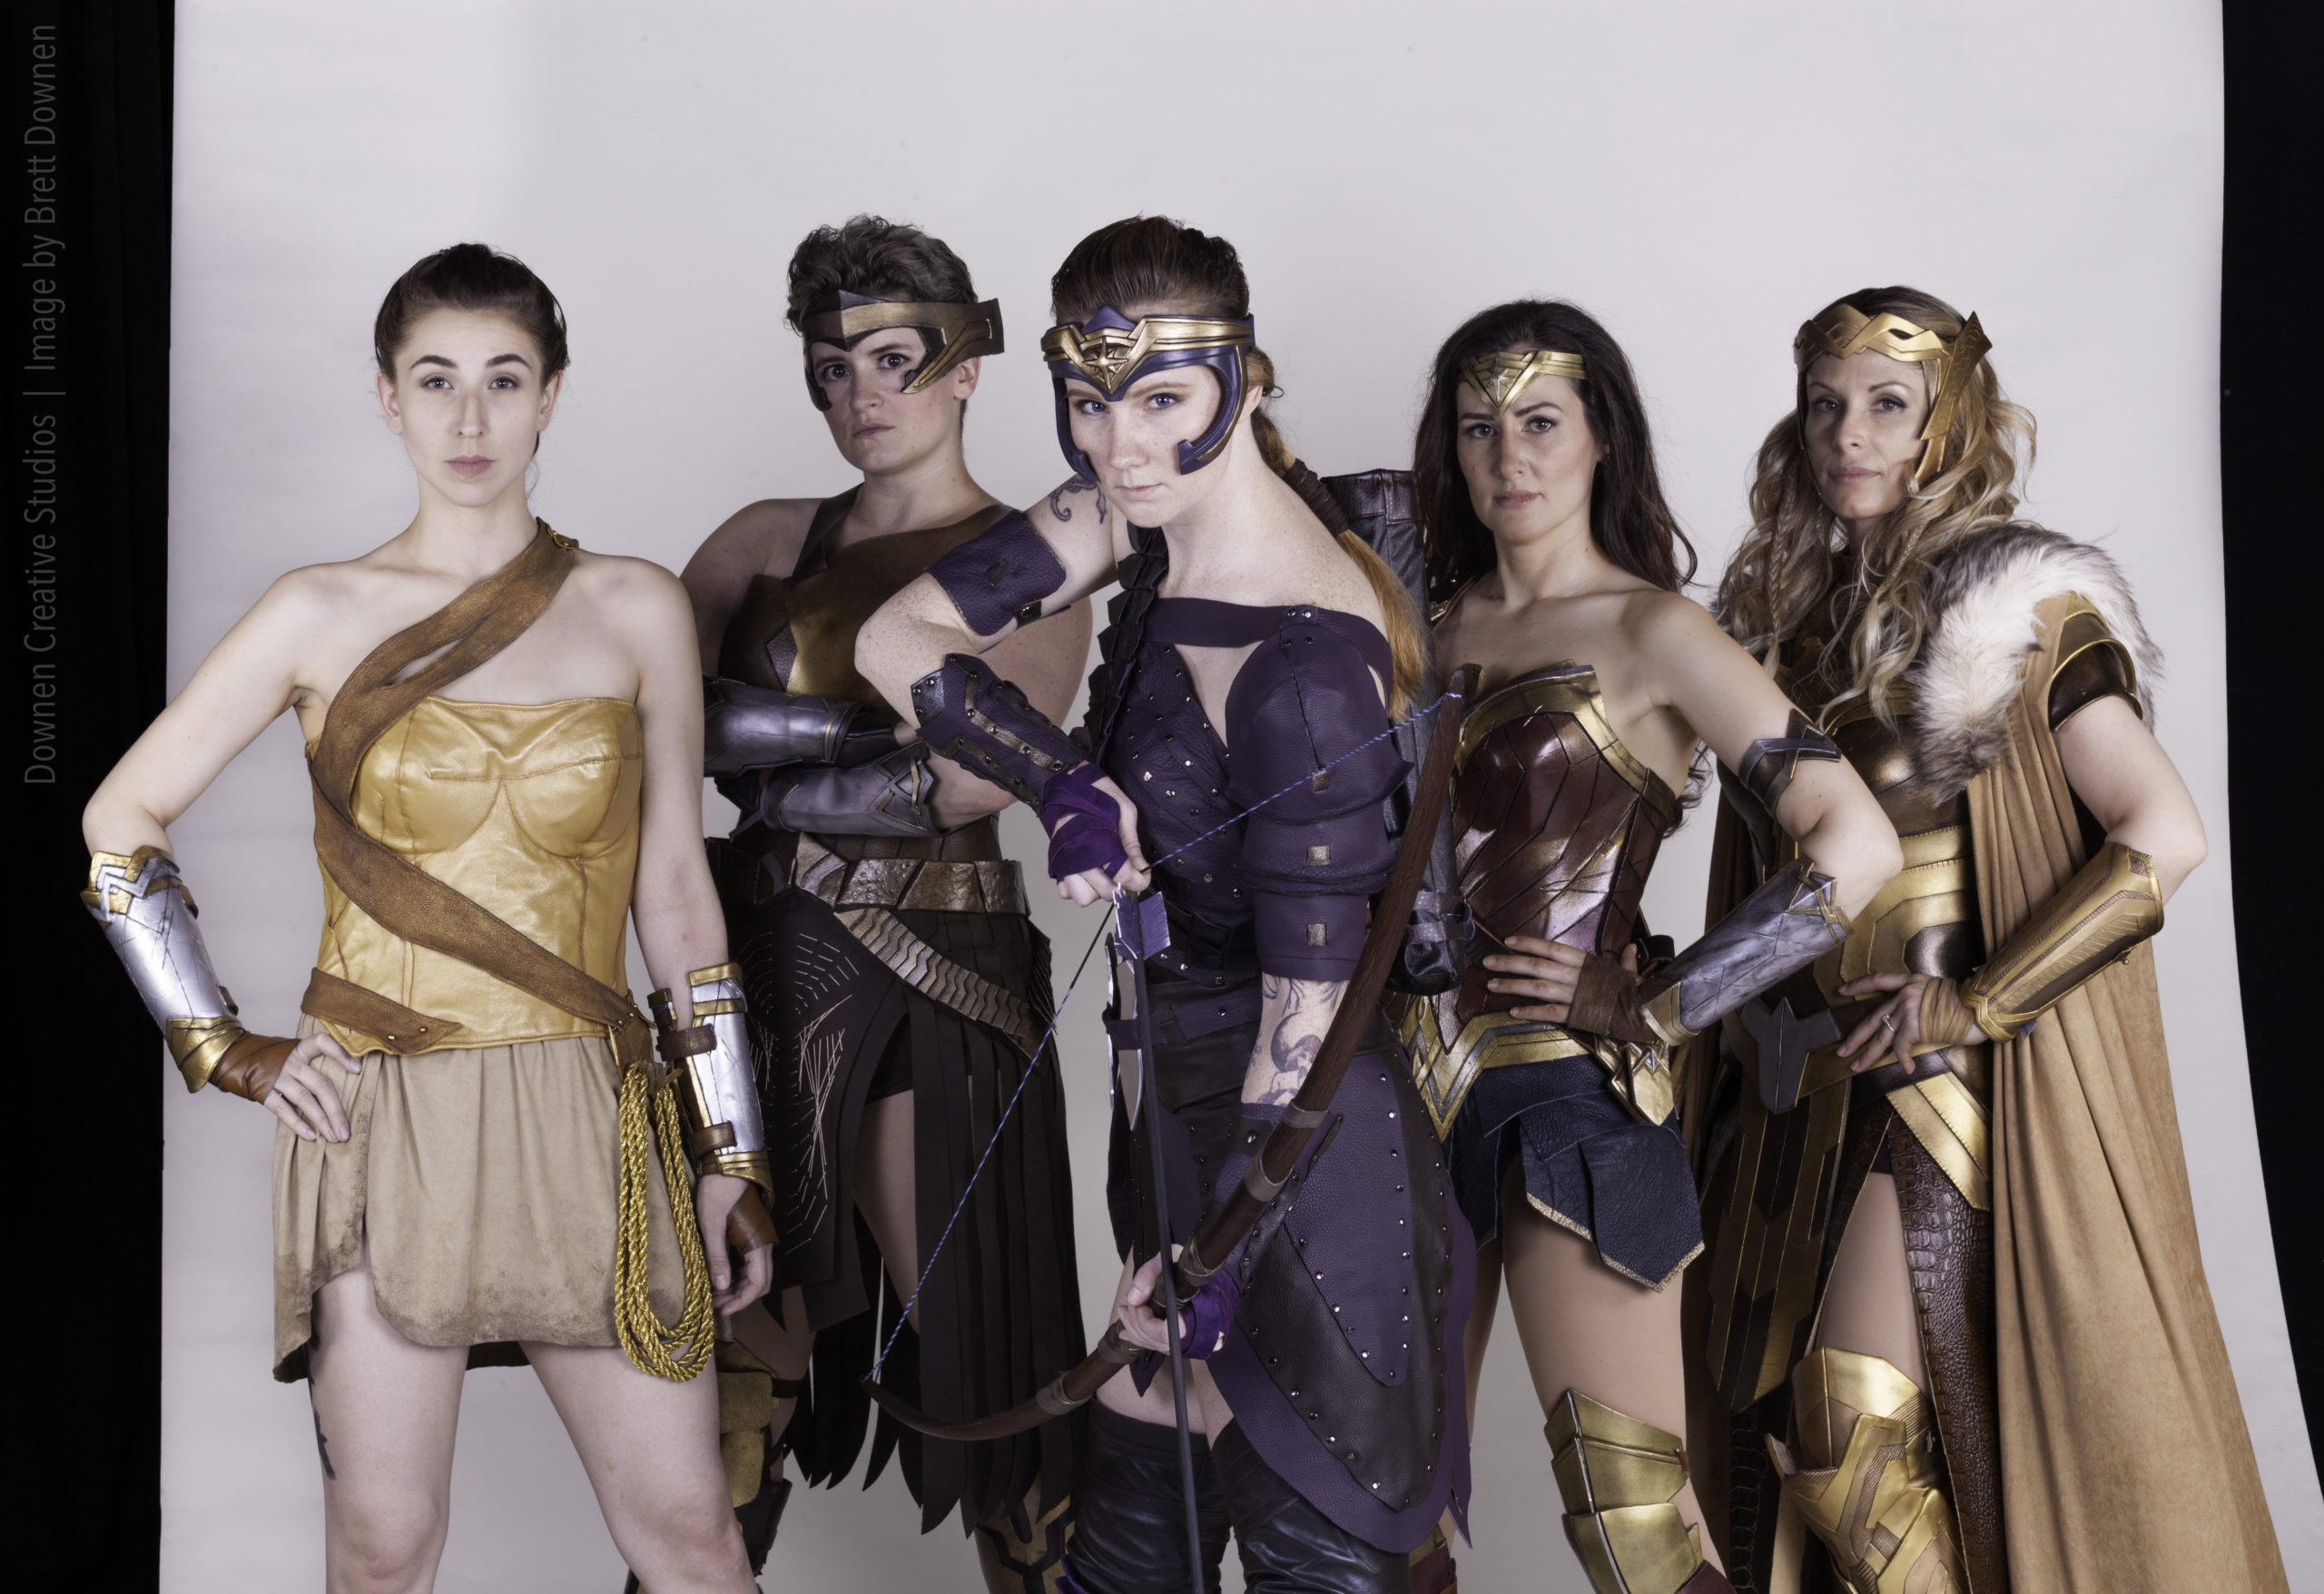 Cosplayers Create Their Own Wonder Woman Vanity Fair Shoot